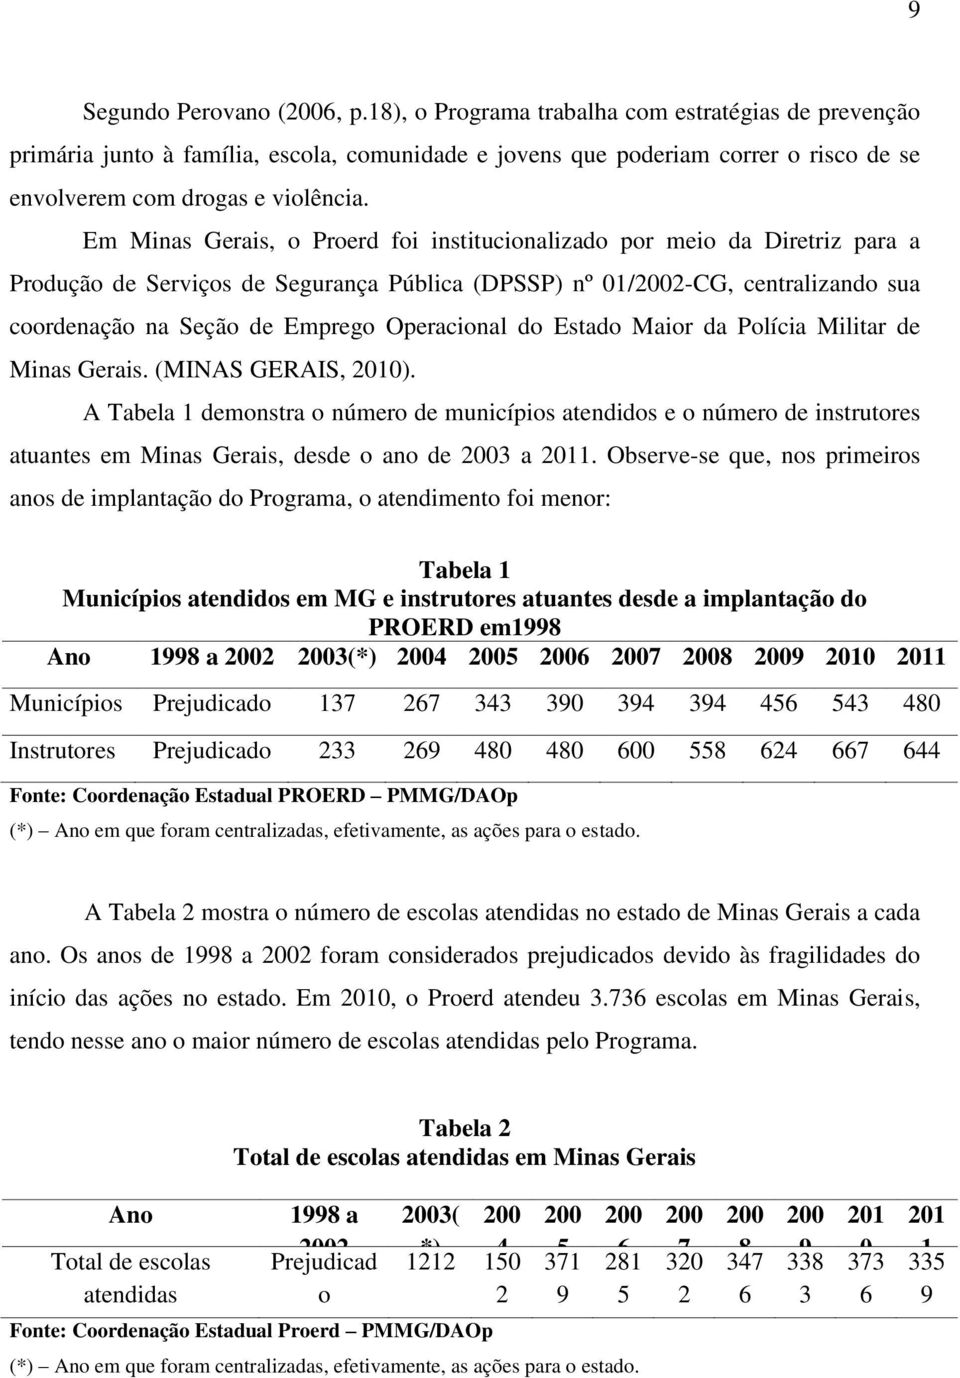 Em Minas Gerais, o Proerd foi institucionalizado por meio da Diretriz para a Produção de Serviços de Segurança Pública (DPSSP) nº 01/2002-CG, centralizando sua coordenação na Seção de Emprego